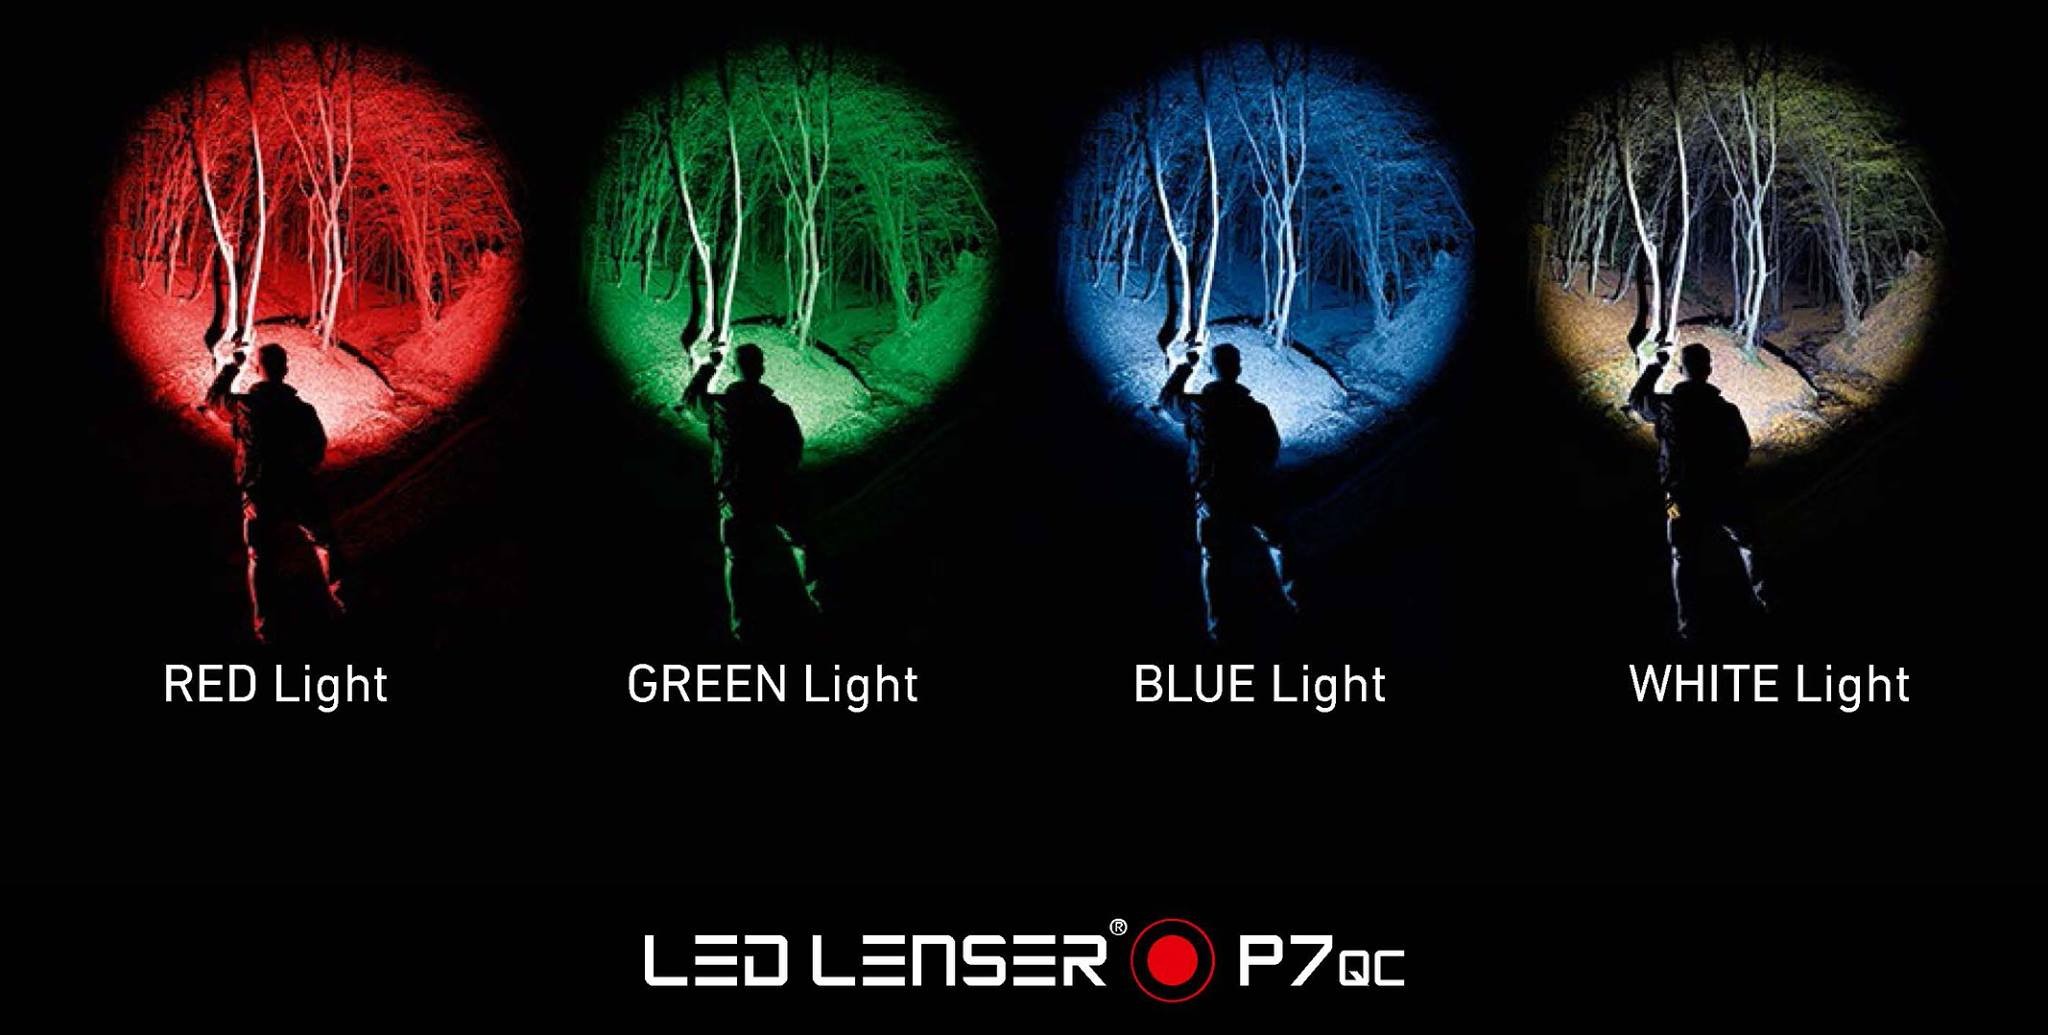 Led Lenser P7QC